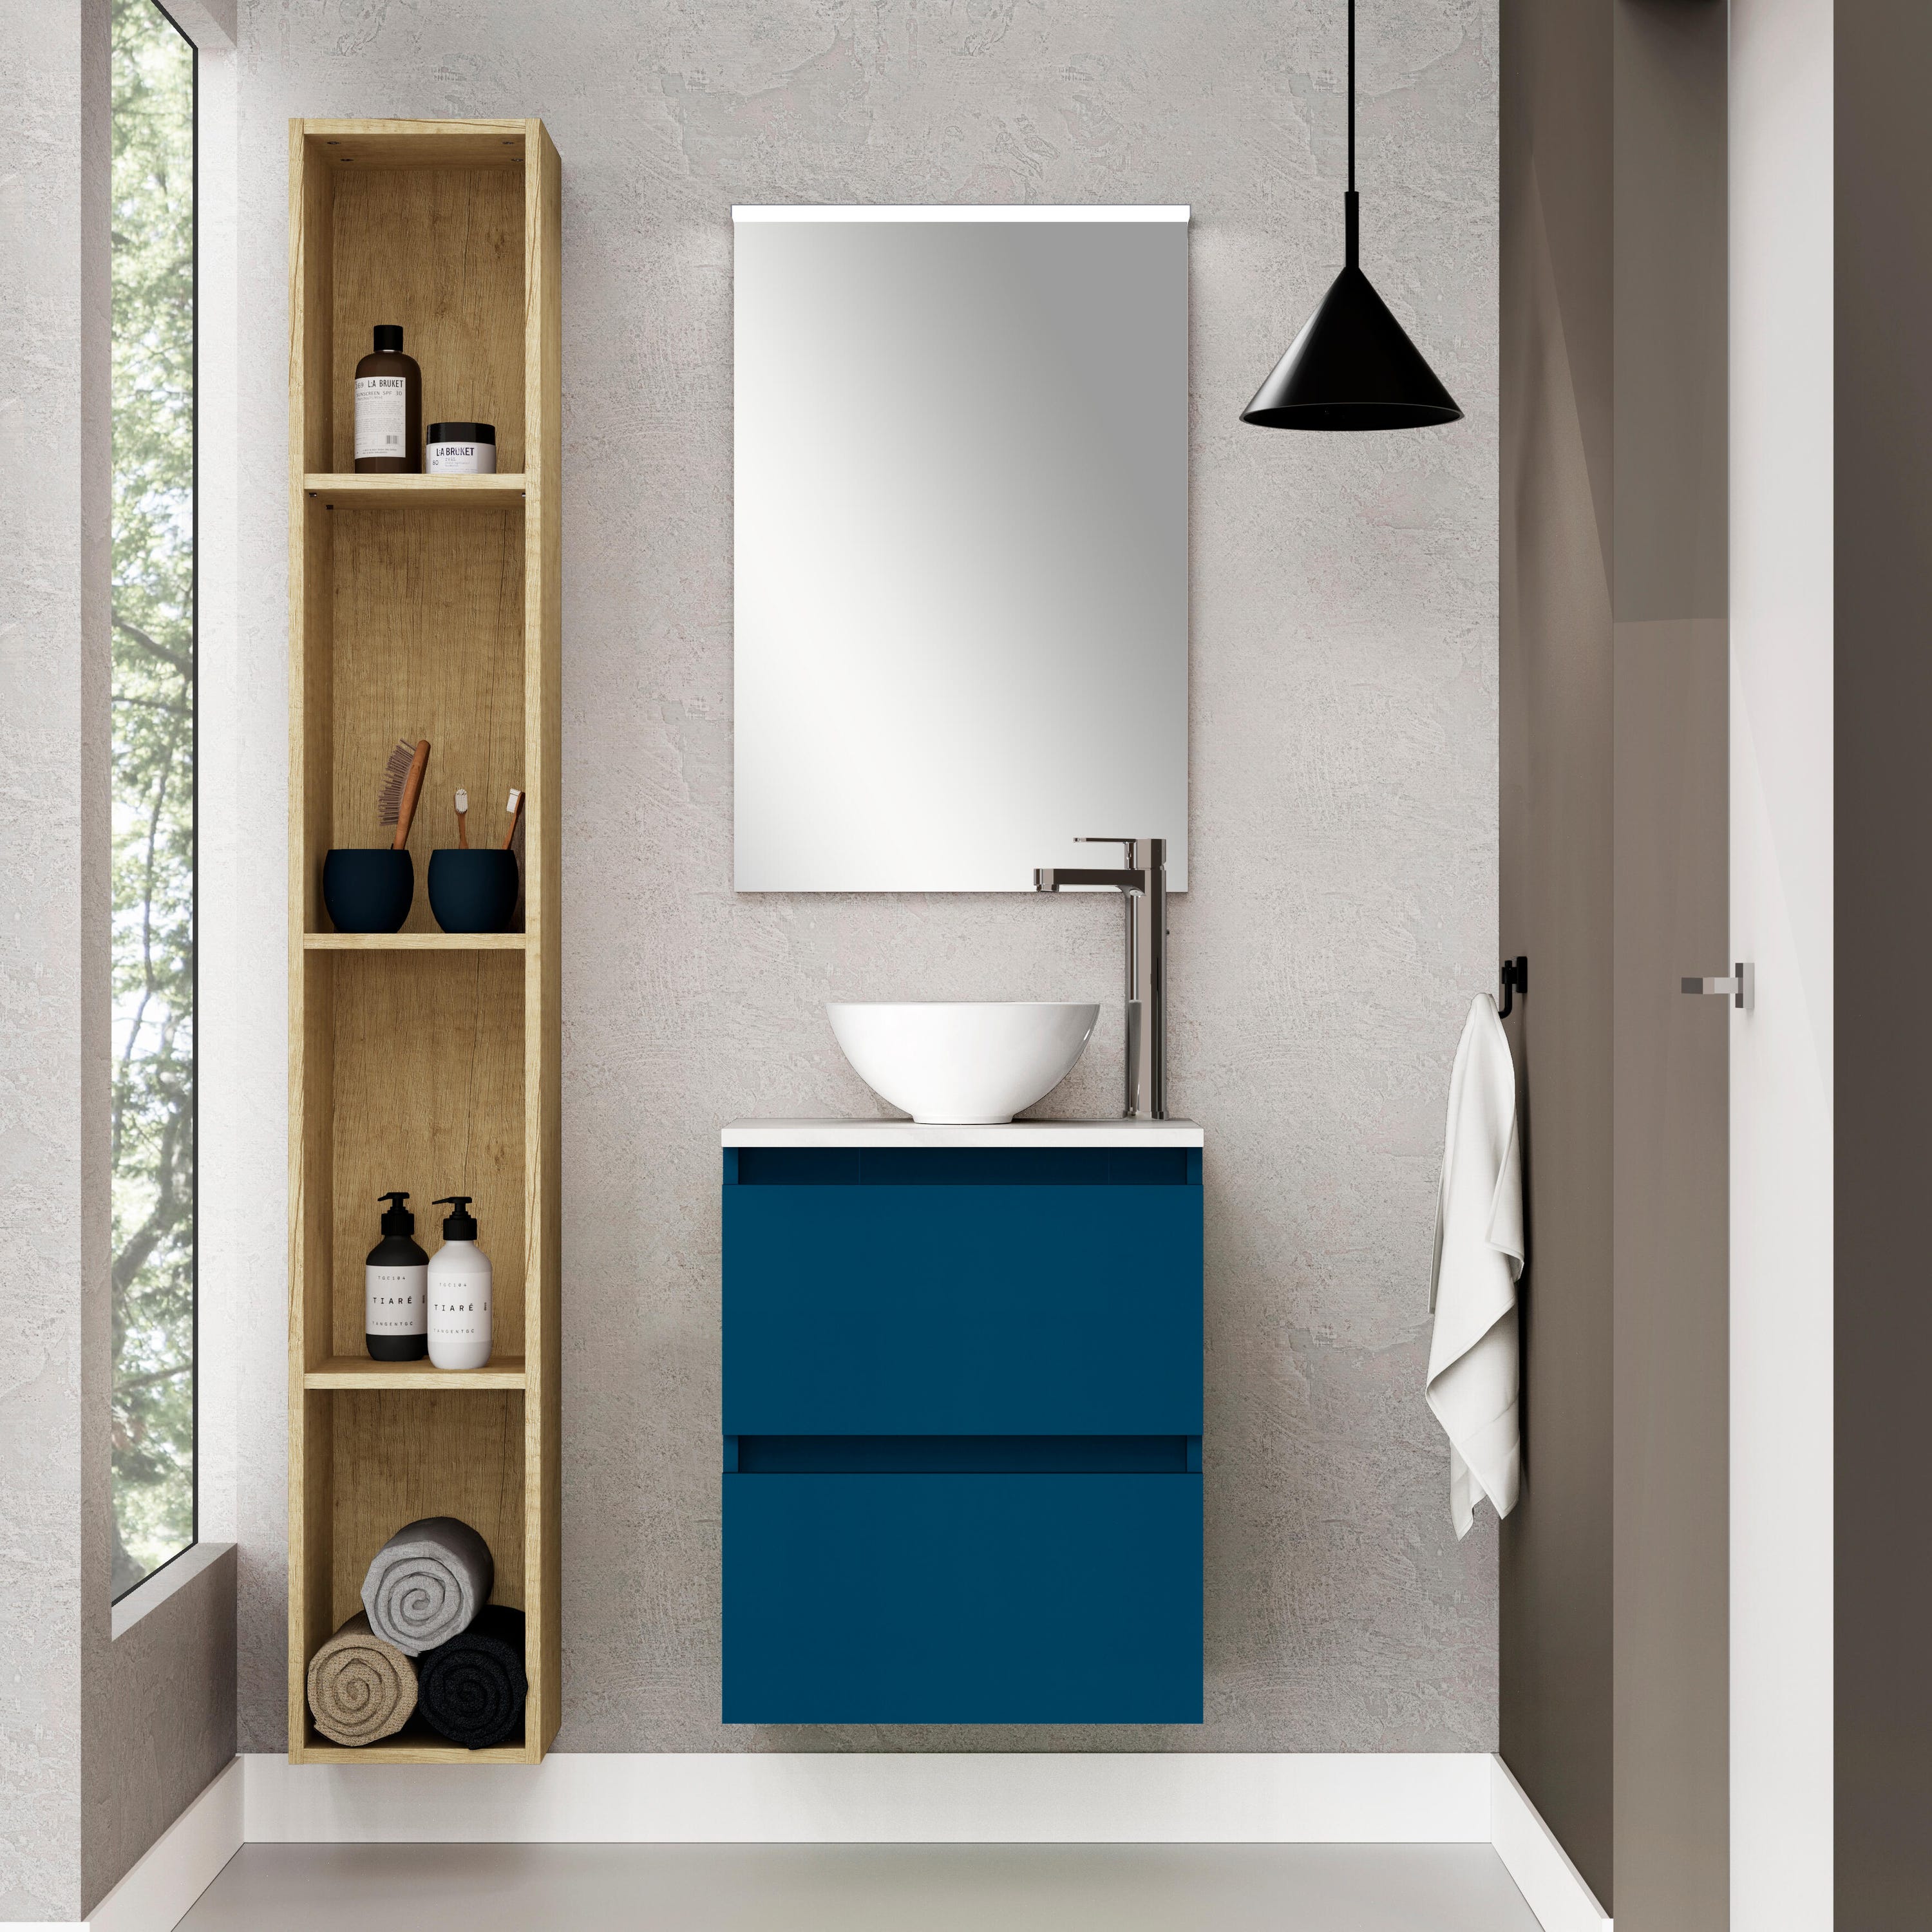 Mueble de baño con lavabo Espacio M gris oscuro 45x35 cm